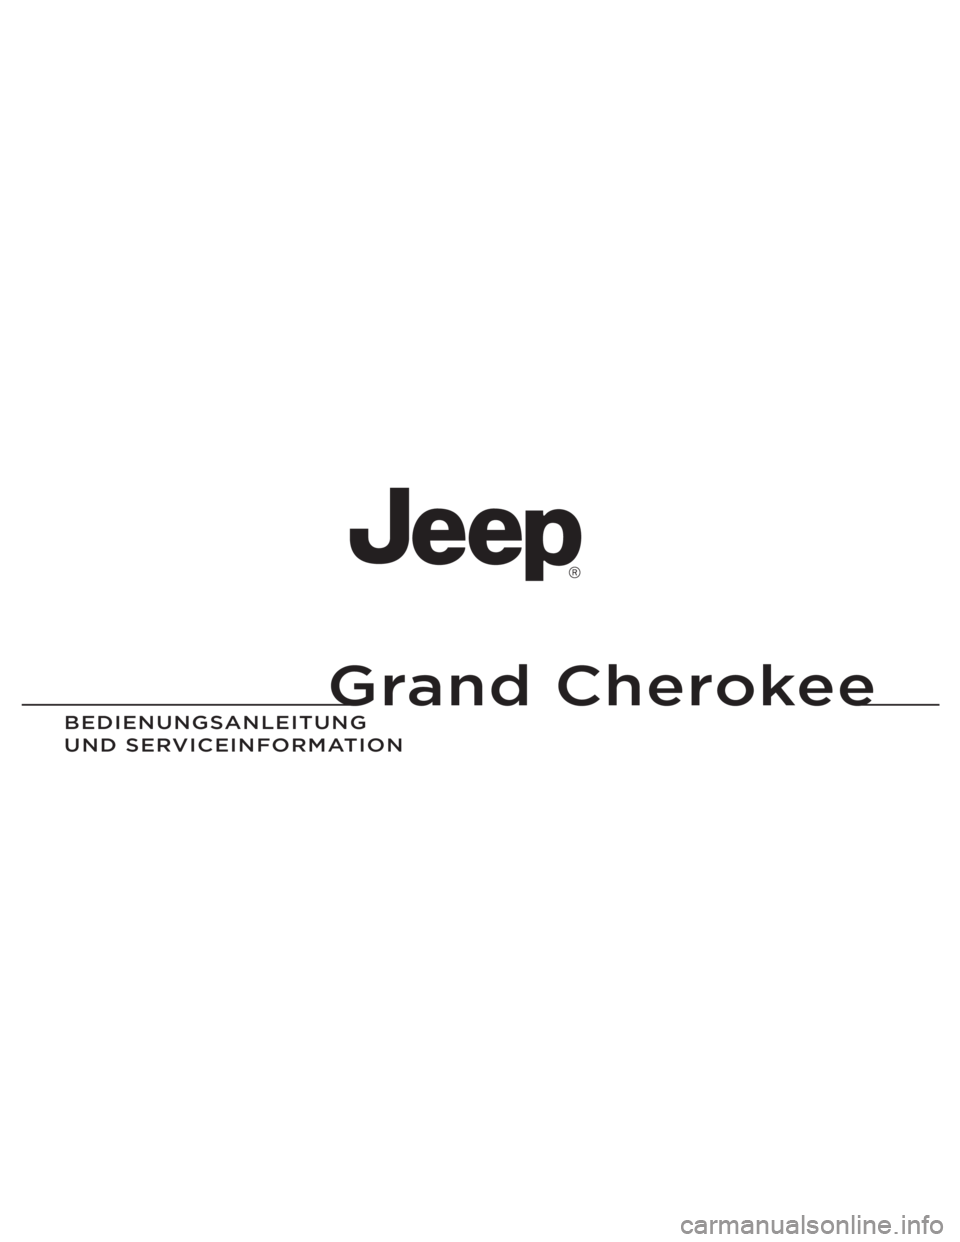 JEEP GRAND CHEROKEE 2013  Betriebsanleitung (in German) Grand Cherokee
BEDIENUNGSAN\fEITUNG 
UND SERVICEIN\bORMATION 